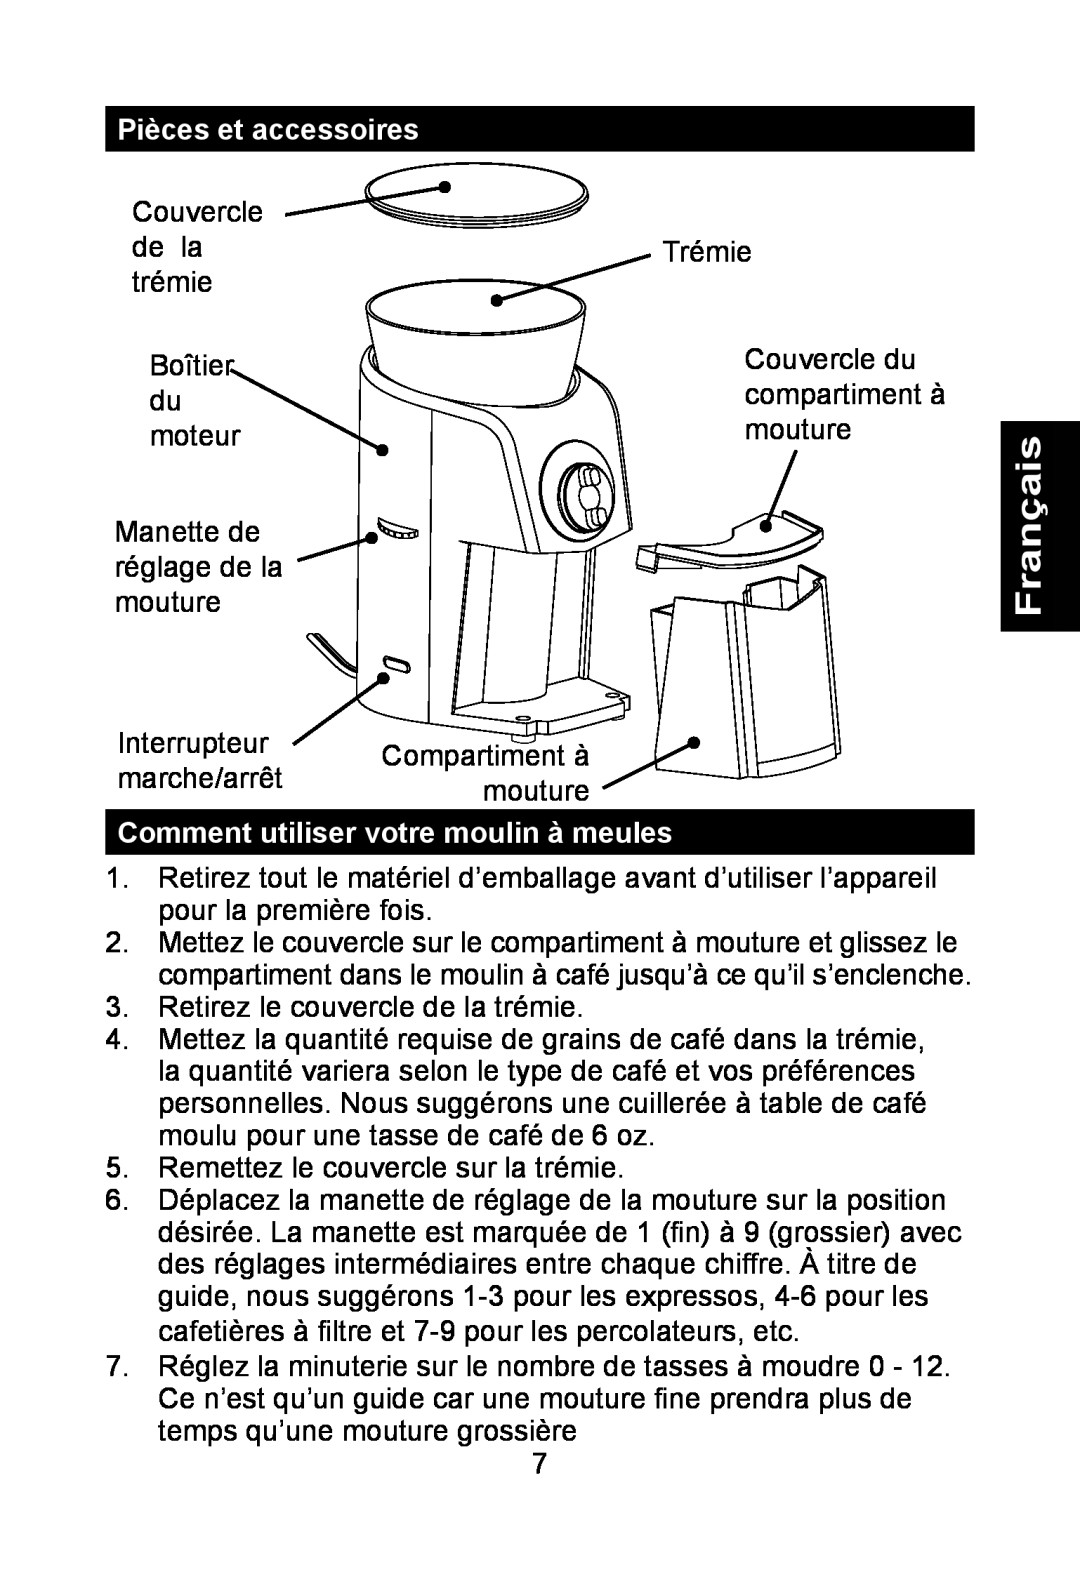 Nesco BG-88PR manual Pièces et accessoires, Comment utiliser votre moulin à meules, Français 